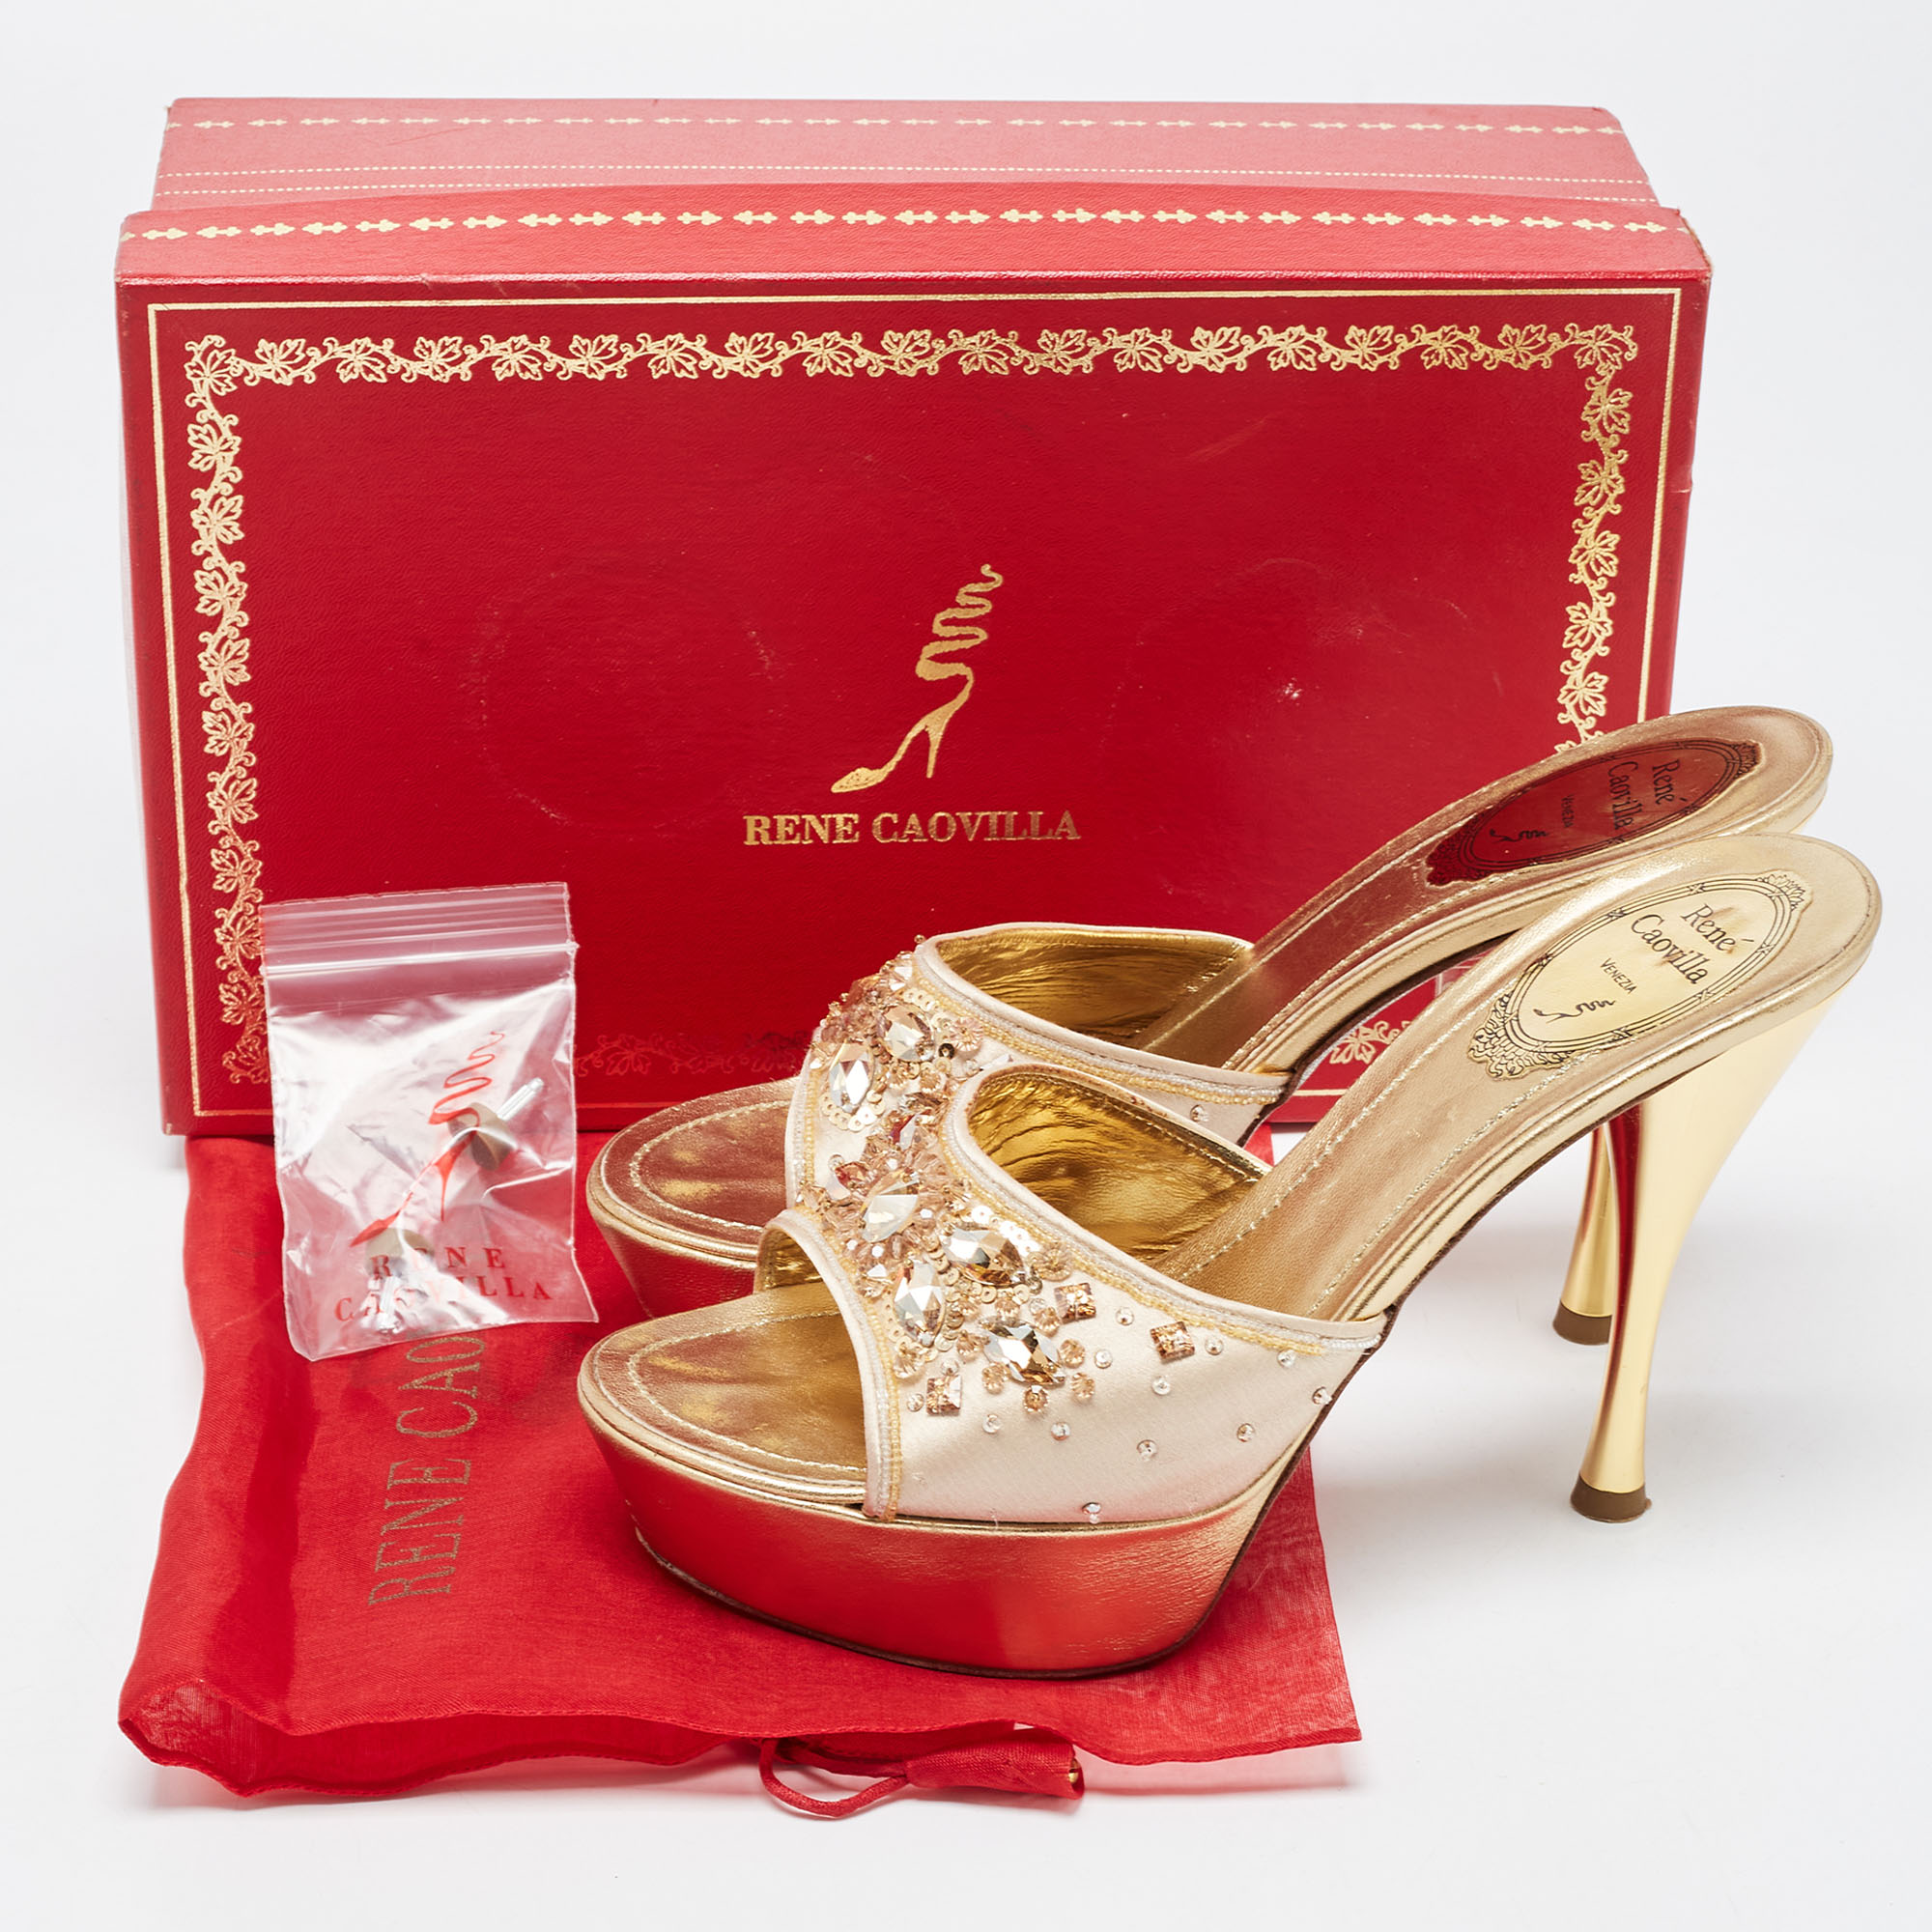 René Caovilla Metallic Gold Leather Embellished Slide Sandals Size 37.5